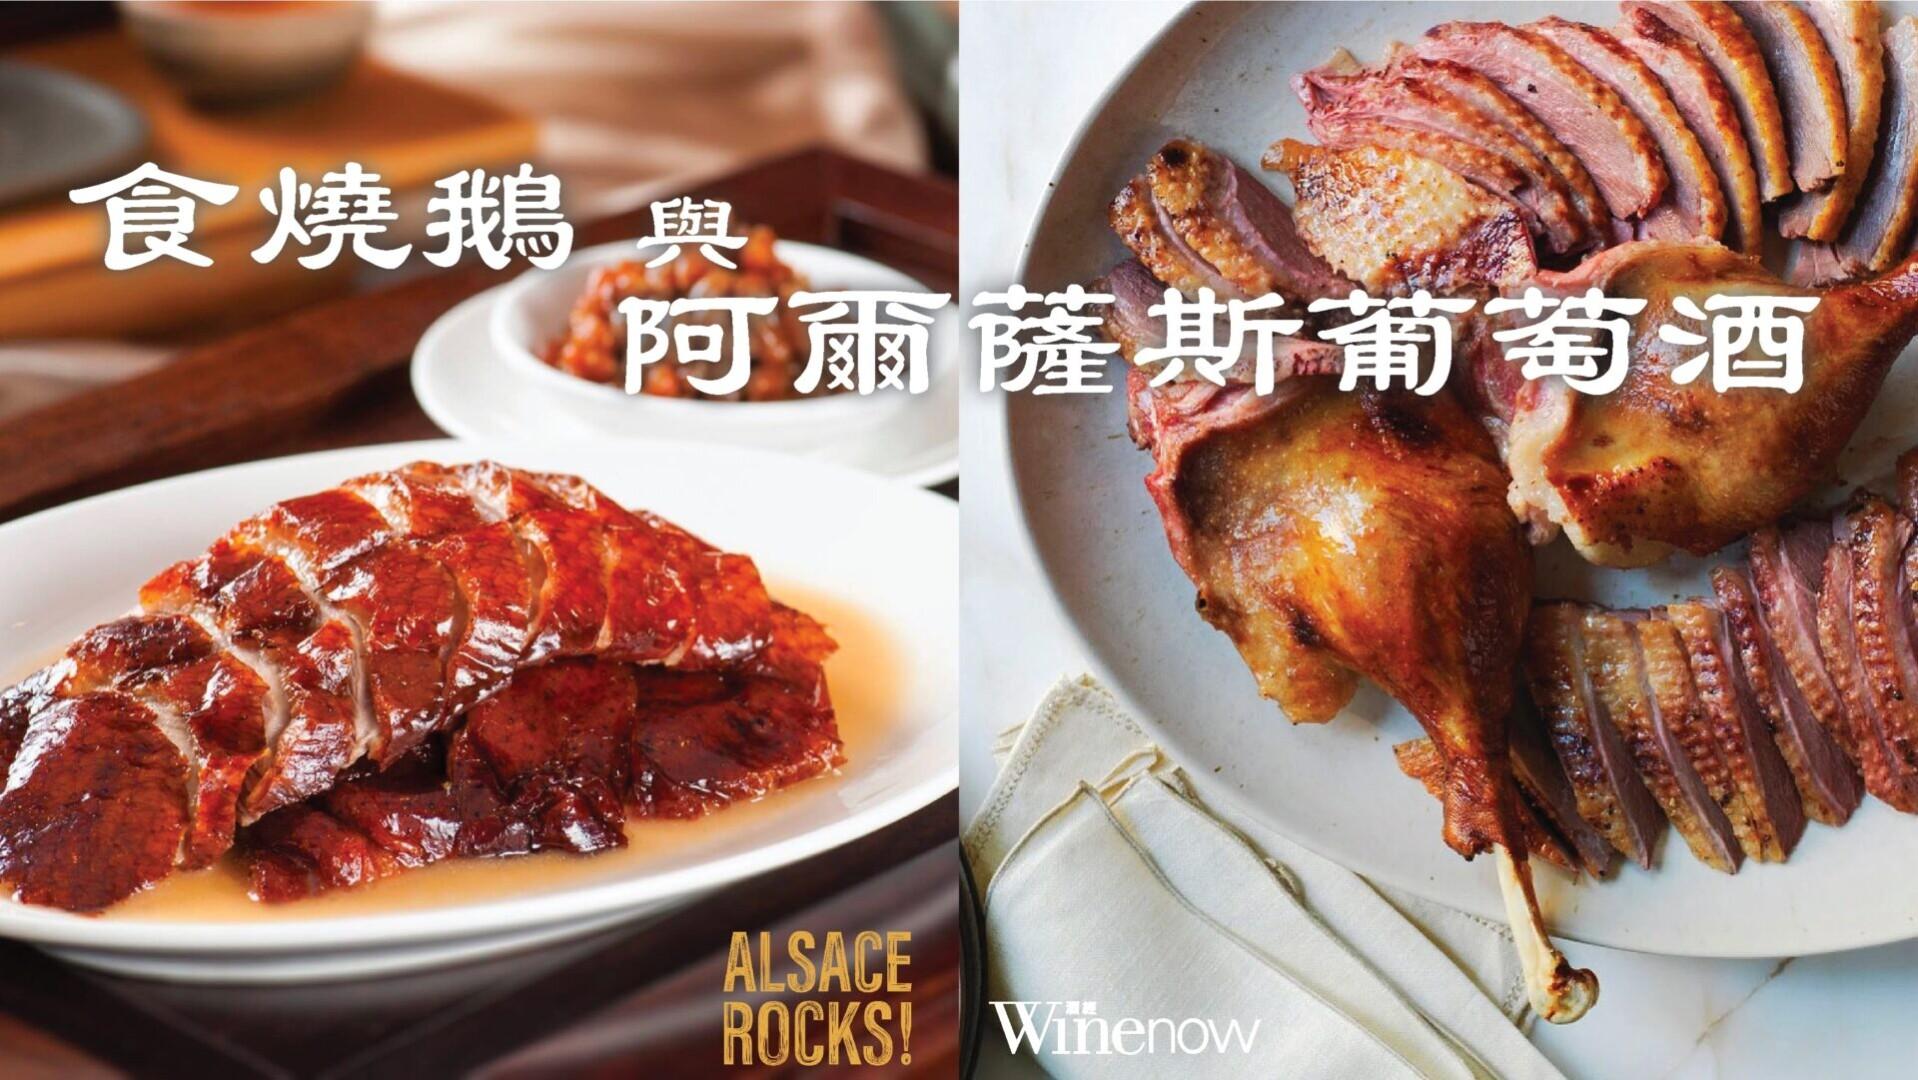 食燒鵝與阿爾薩斯葡萄酒 - WineNow HK 專欄文章